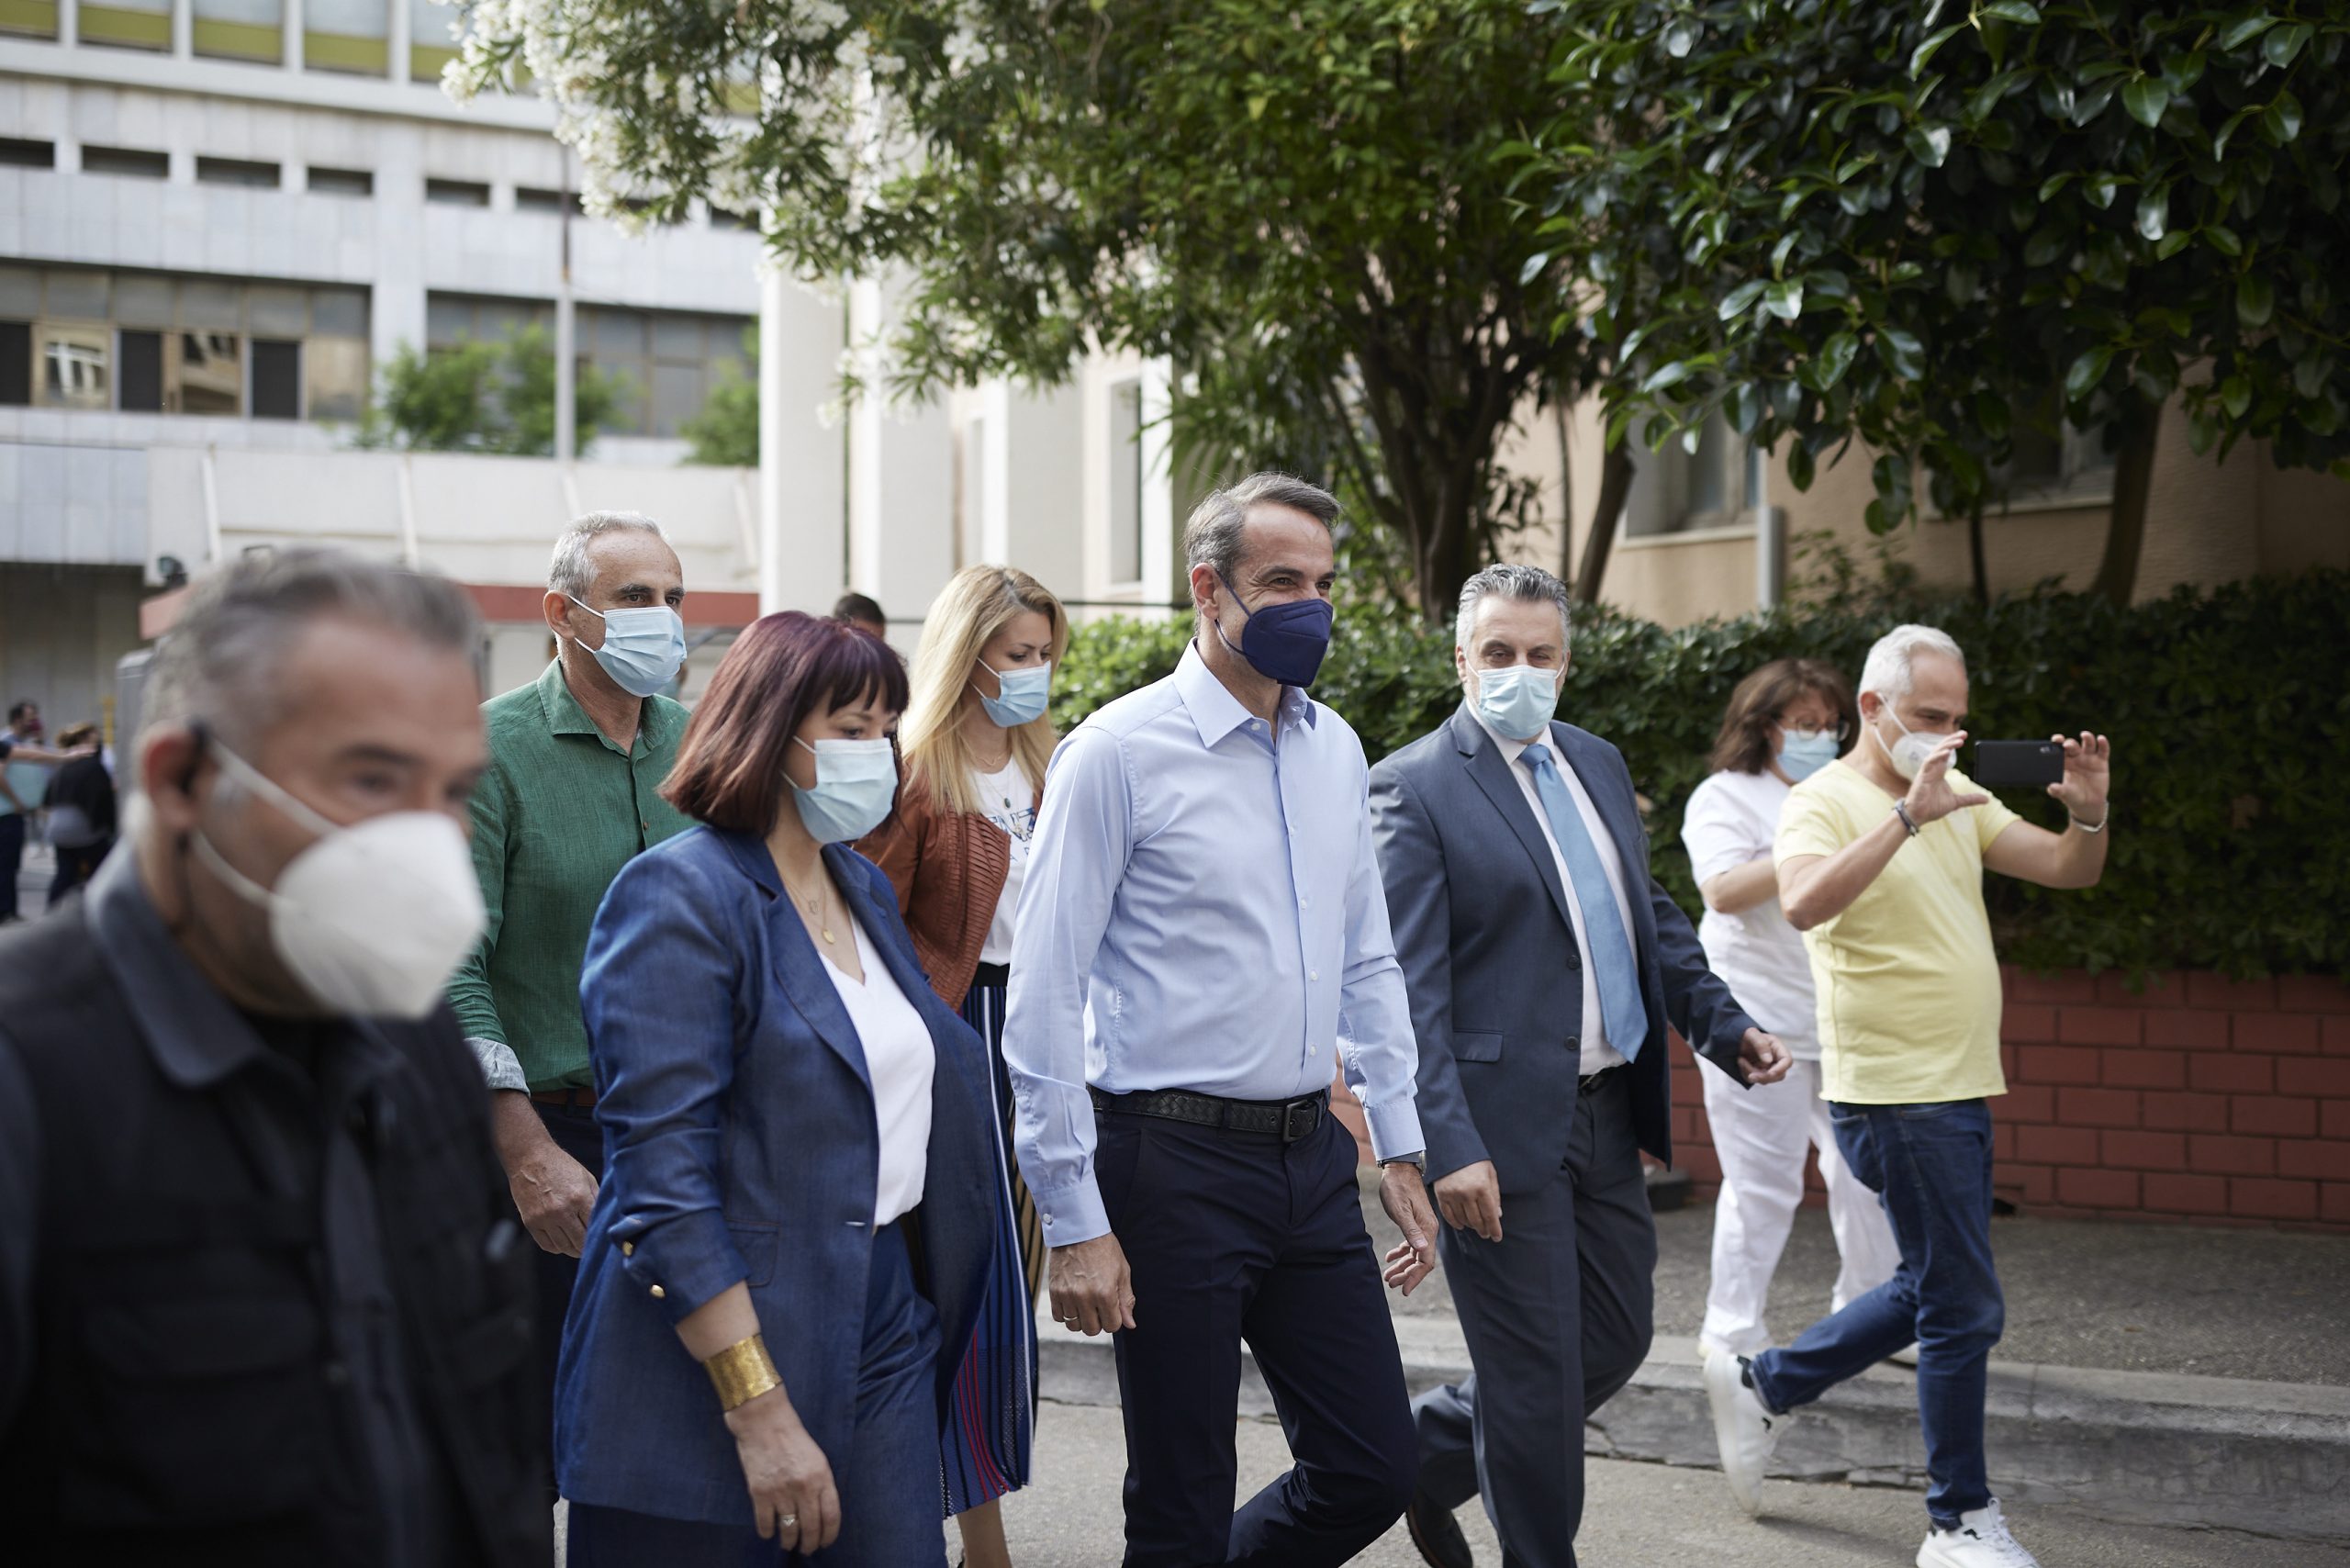 Το Γενικό Αντικαρκινικό - Ογκολογικό Νοσοκομείο Αθηνών «Άγιος Σάββας» επισκέφθηκε ο Πρόεδρος της Νέας Δημοκρατίας Κυριάκος Μητσοτάκης.